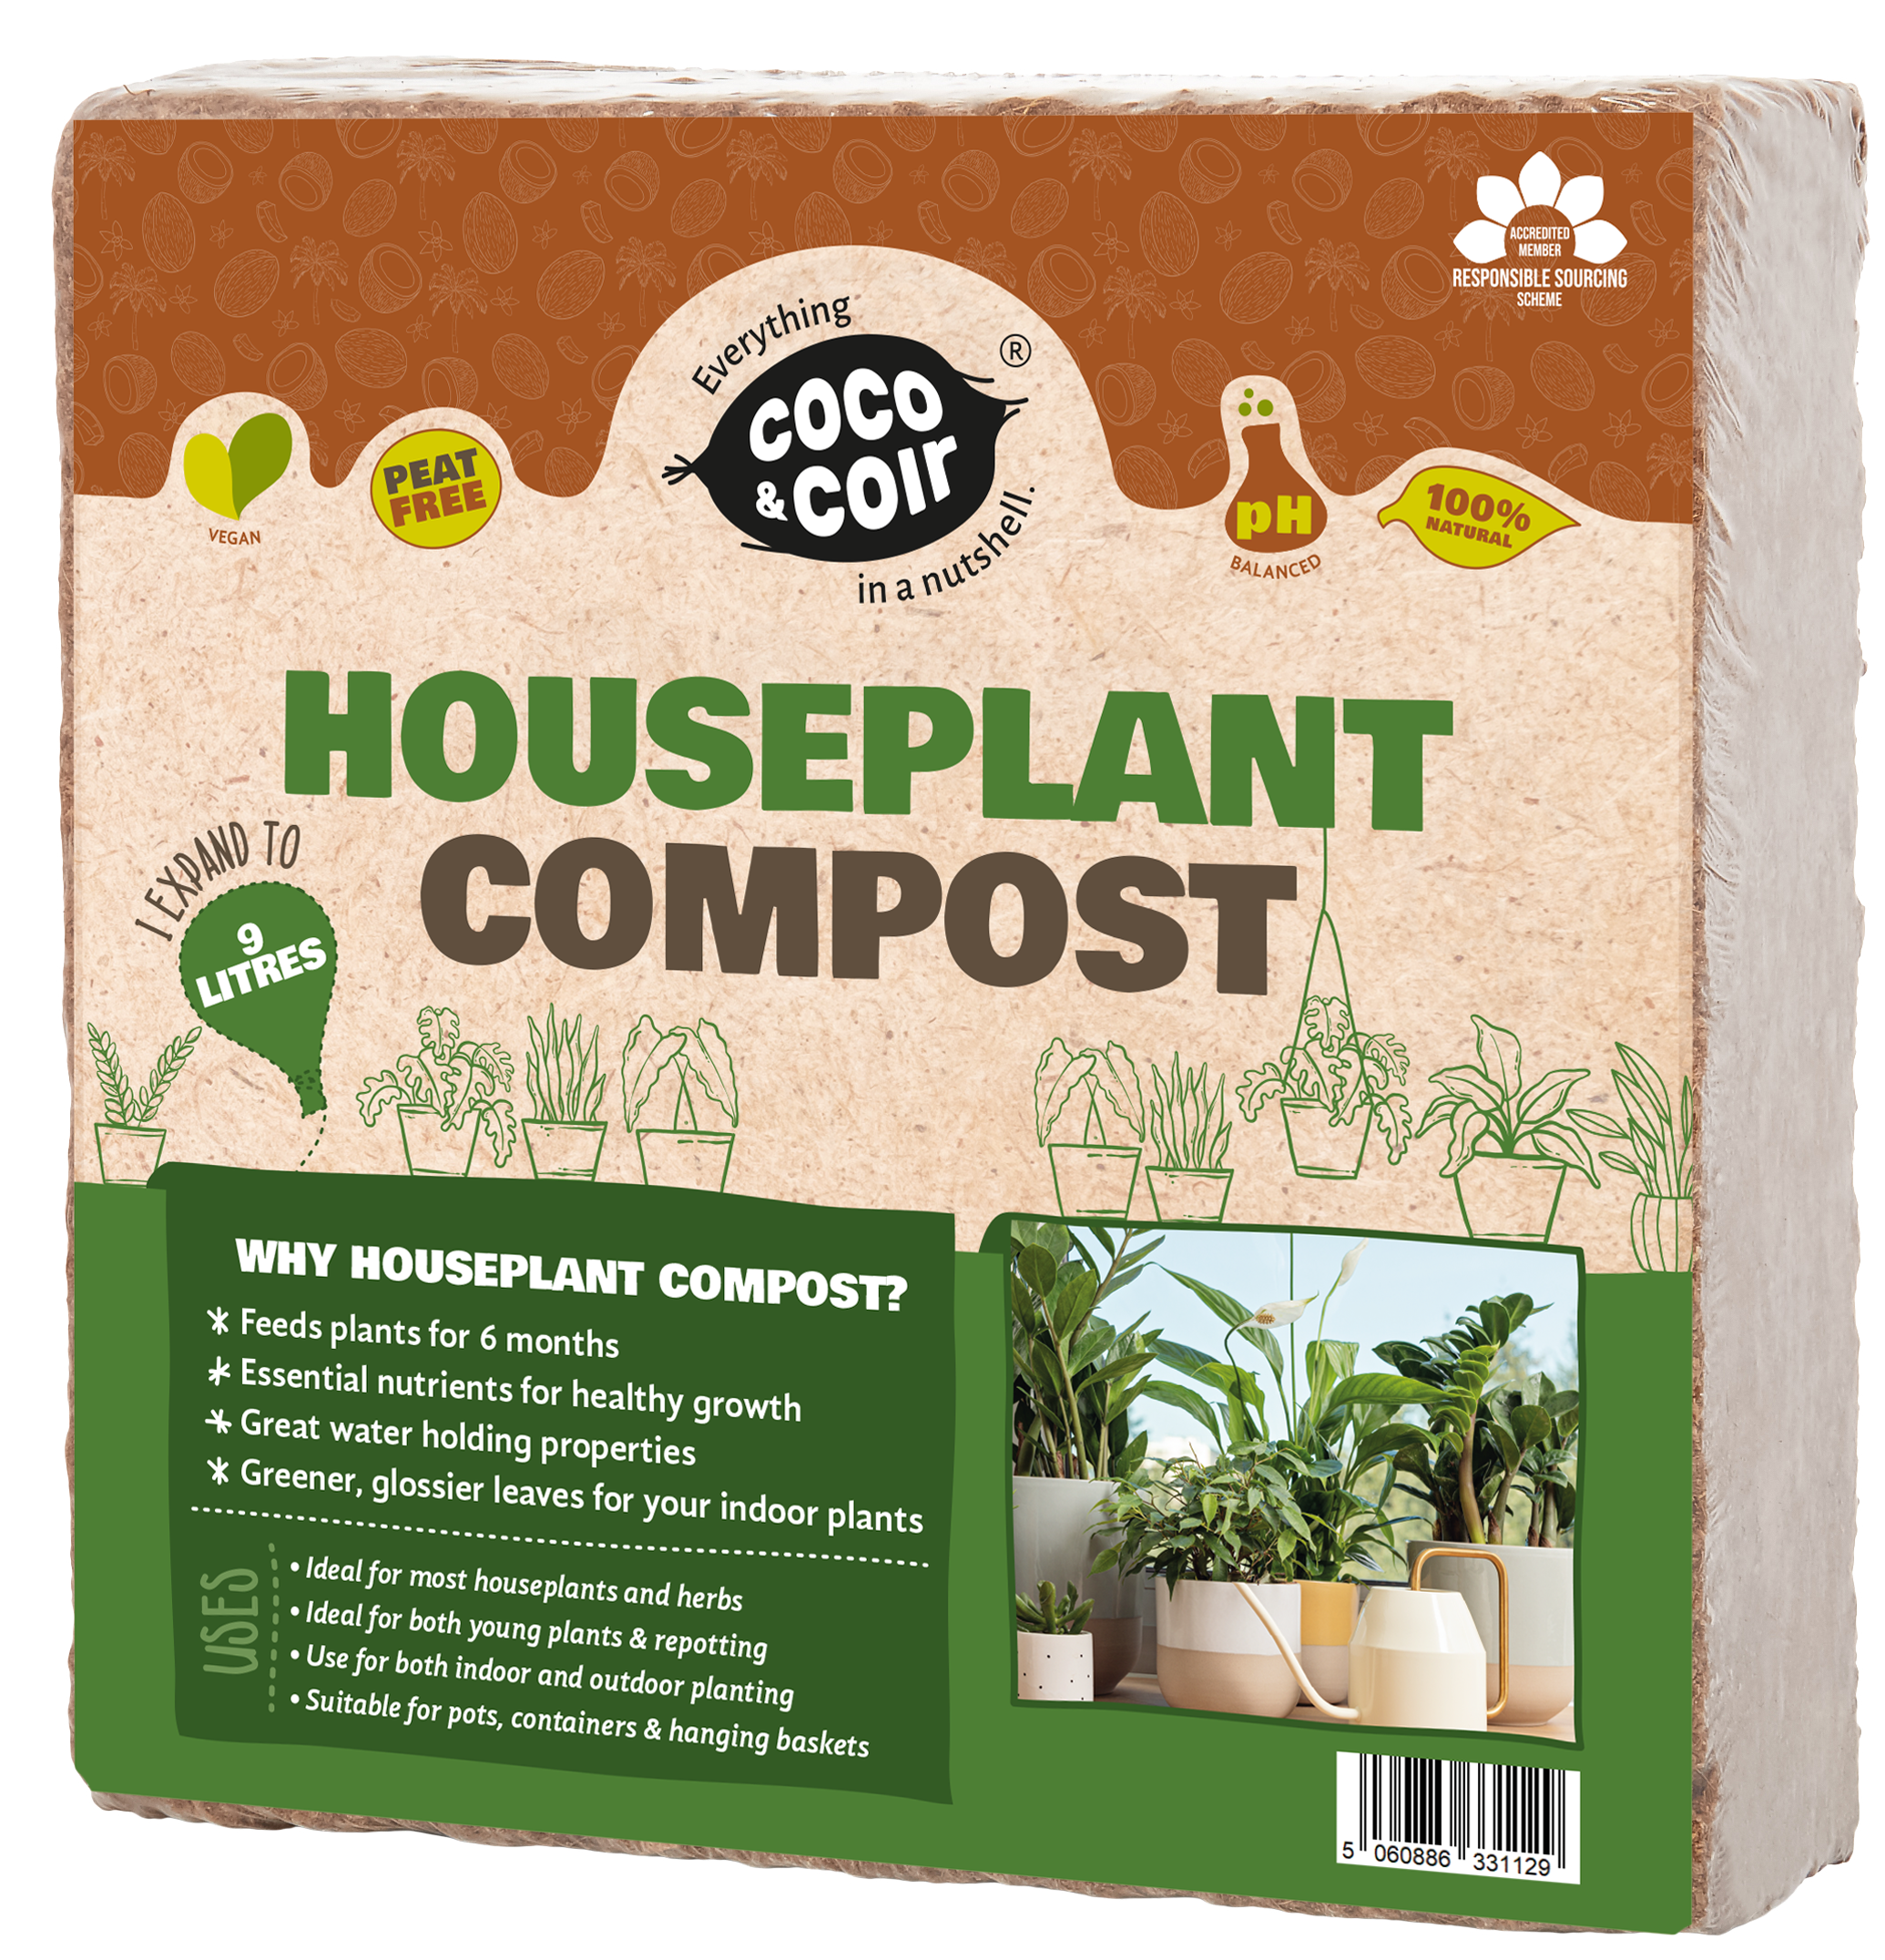 Houseplant Potting Mix - Peat-free Potting Soil (9L)